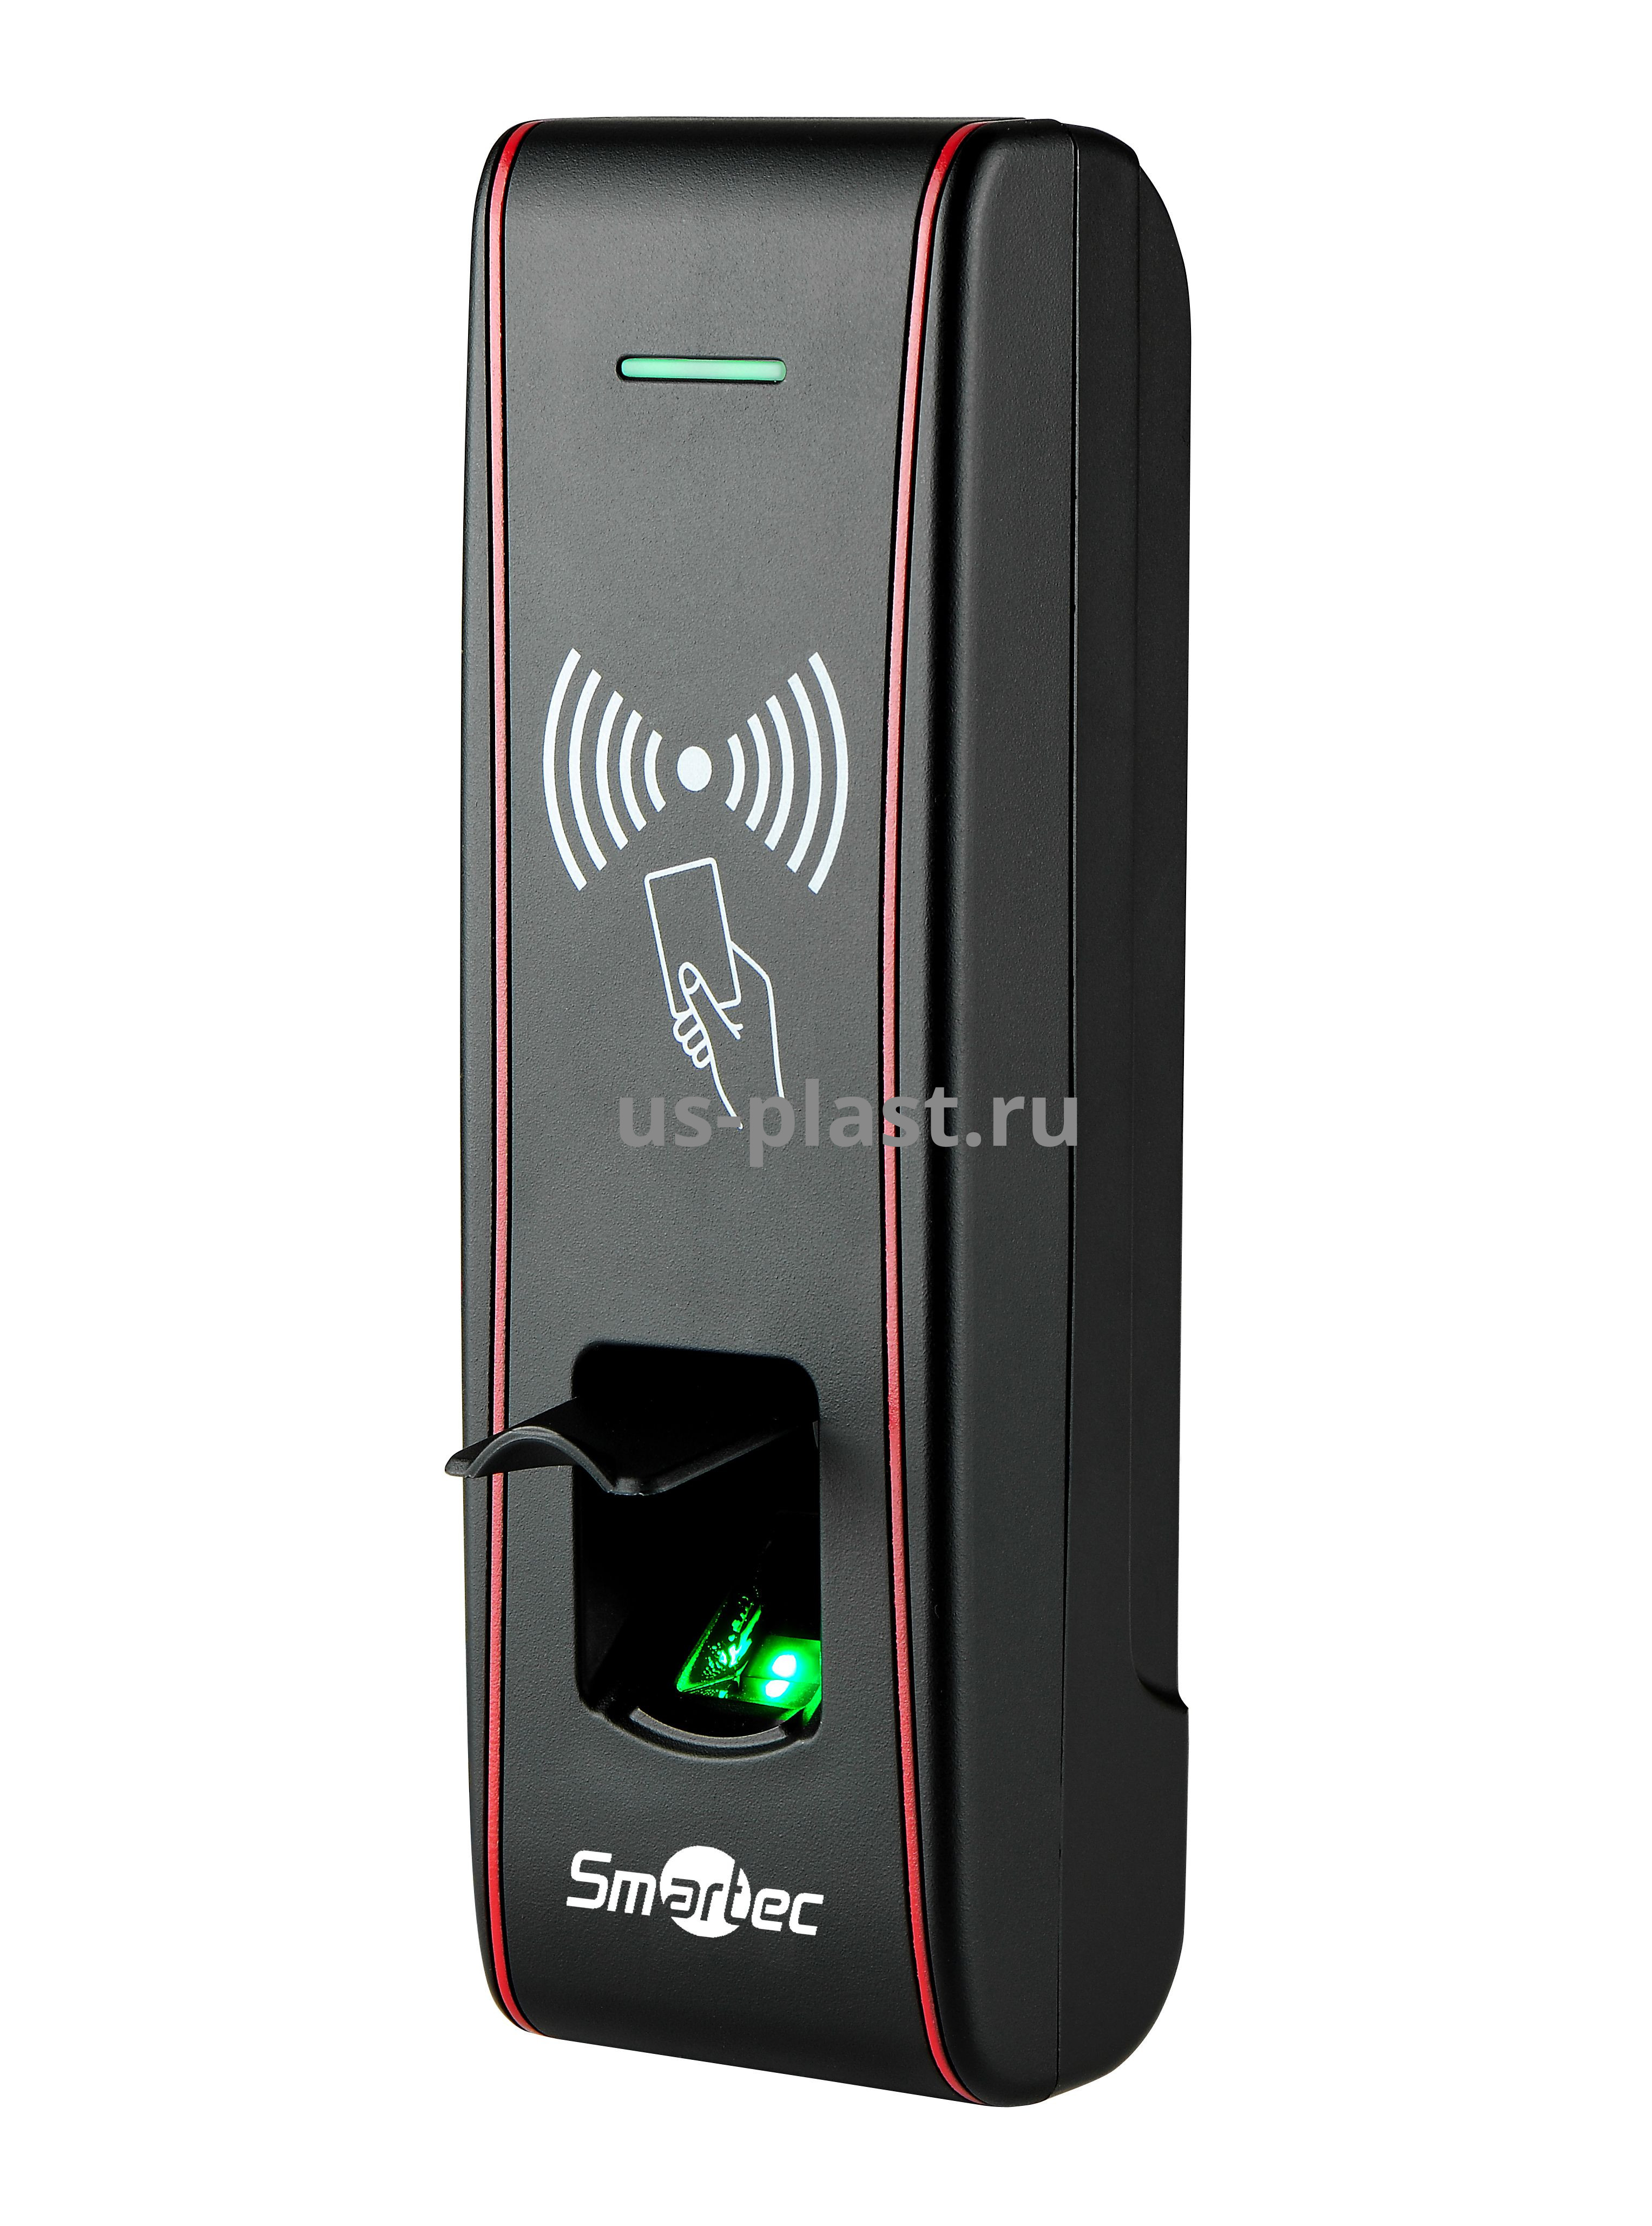 Smartec ST-FR030EMW, уличный биометрический считыватель контроля доступа